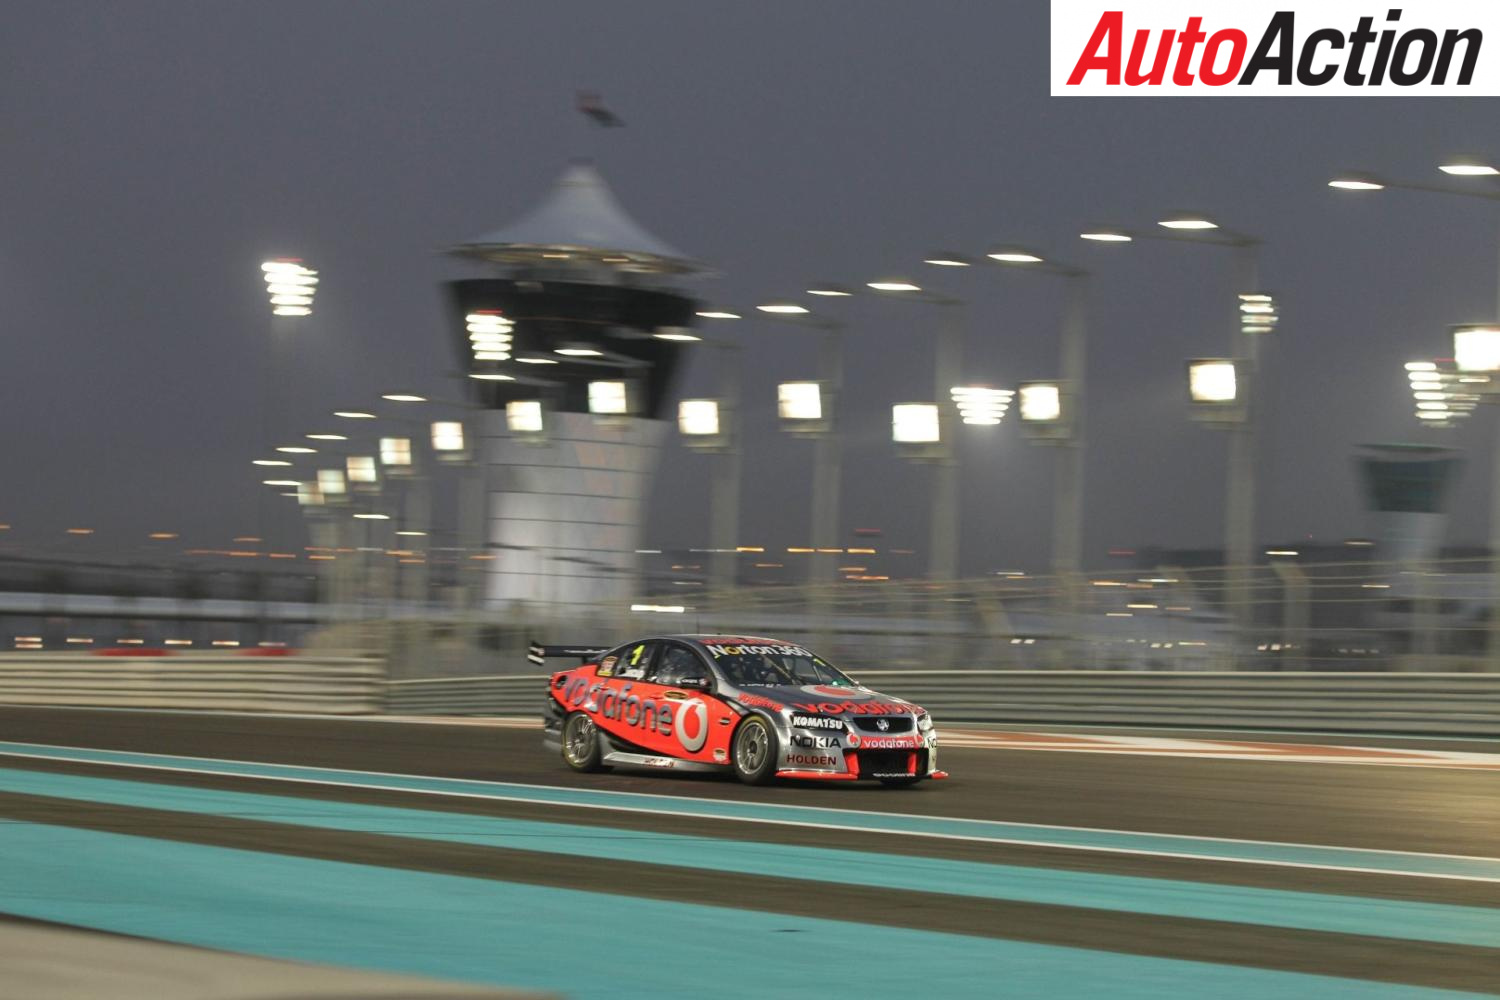 Supercars last ran under lights at Abu Dhabi - Photo: LAT